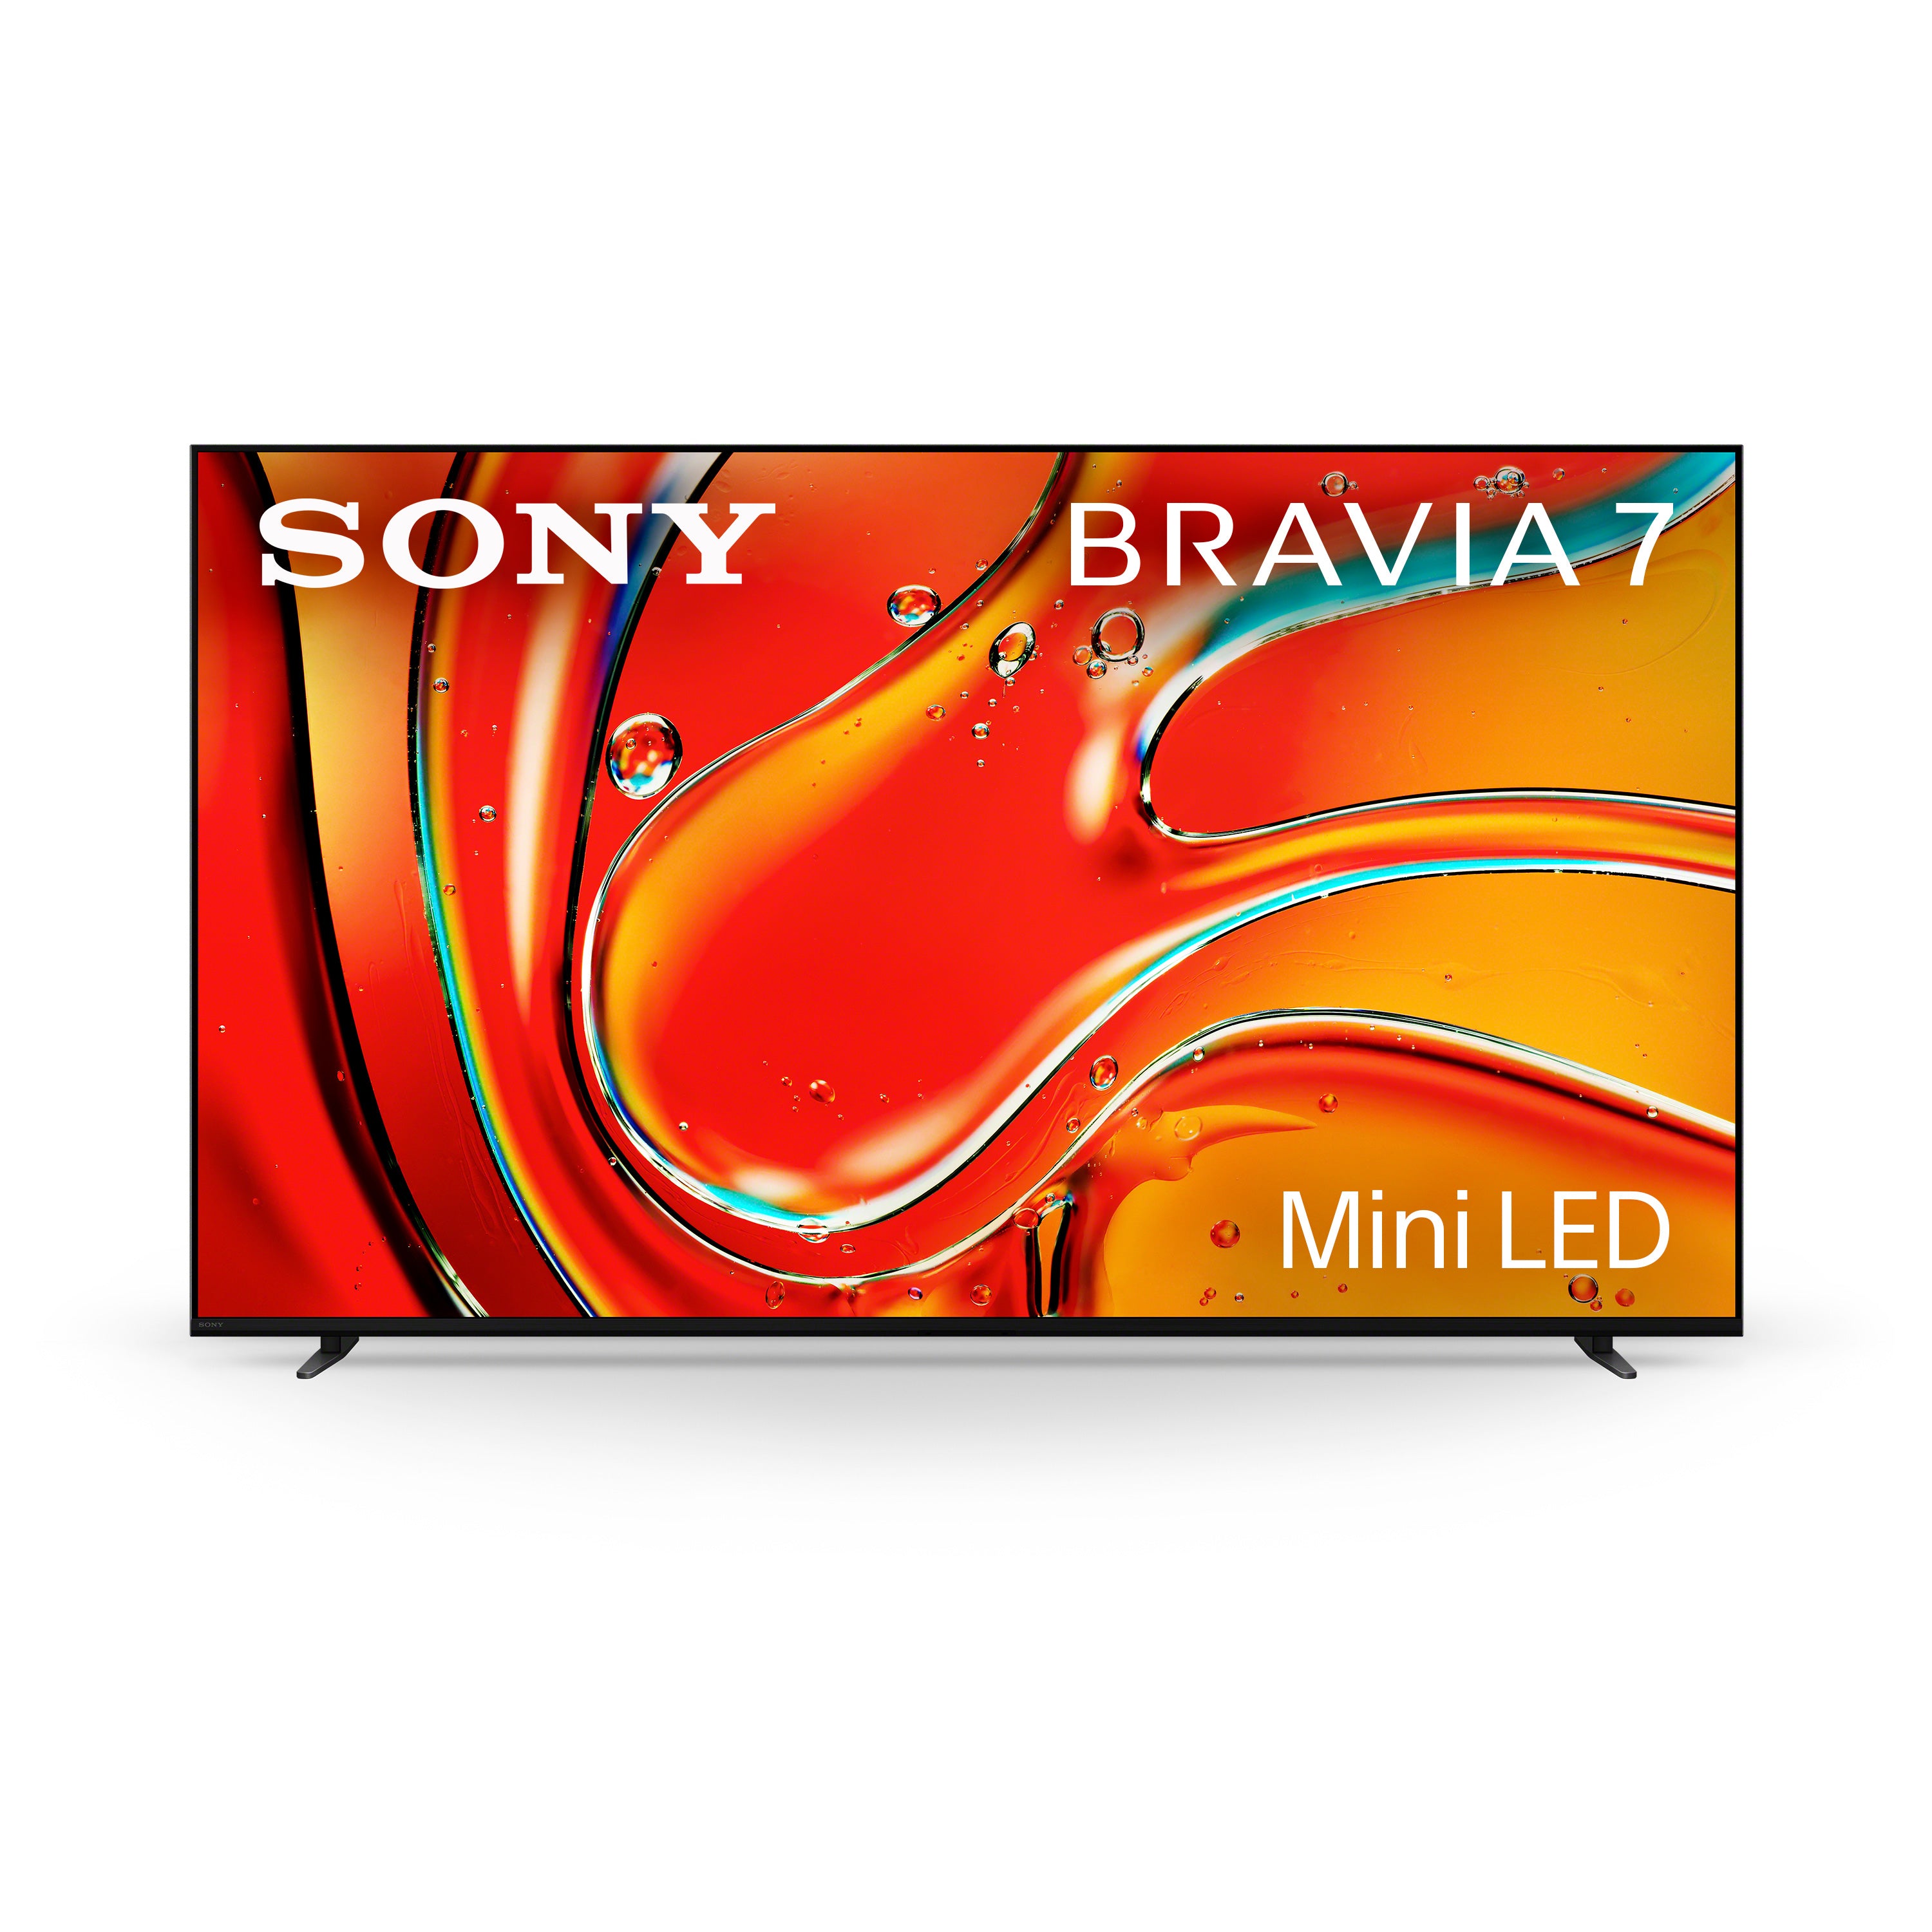 BRAVIA 7 Mini LED QLED 4K HDR Google TV